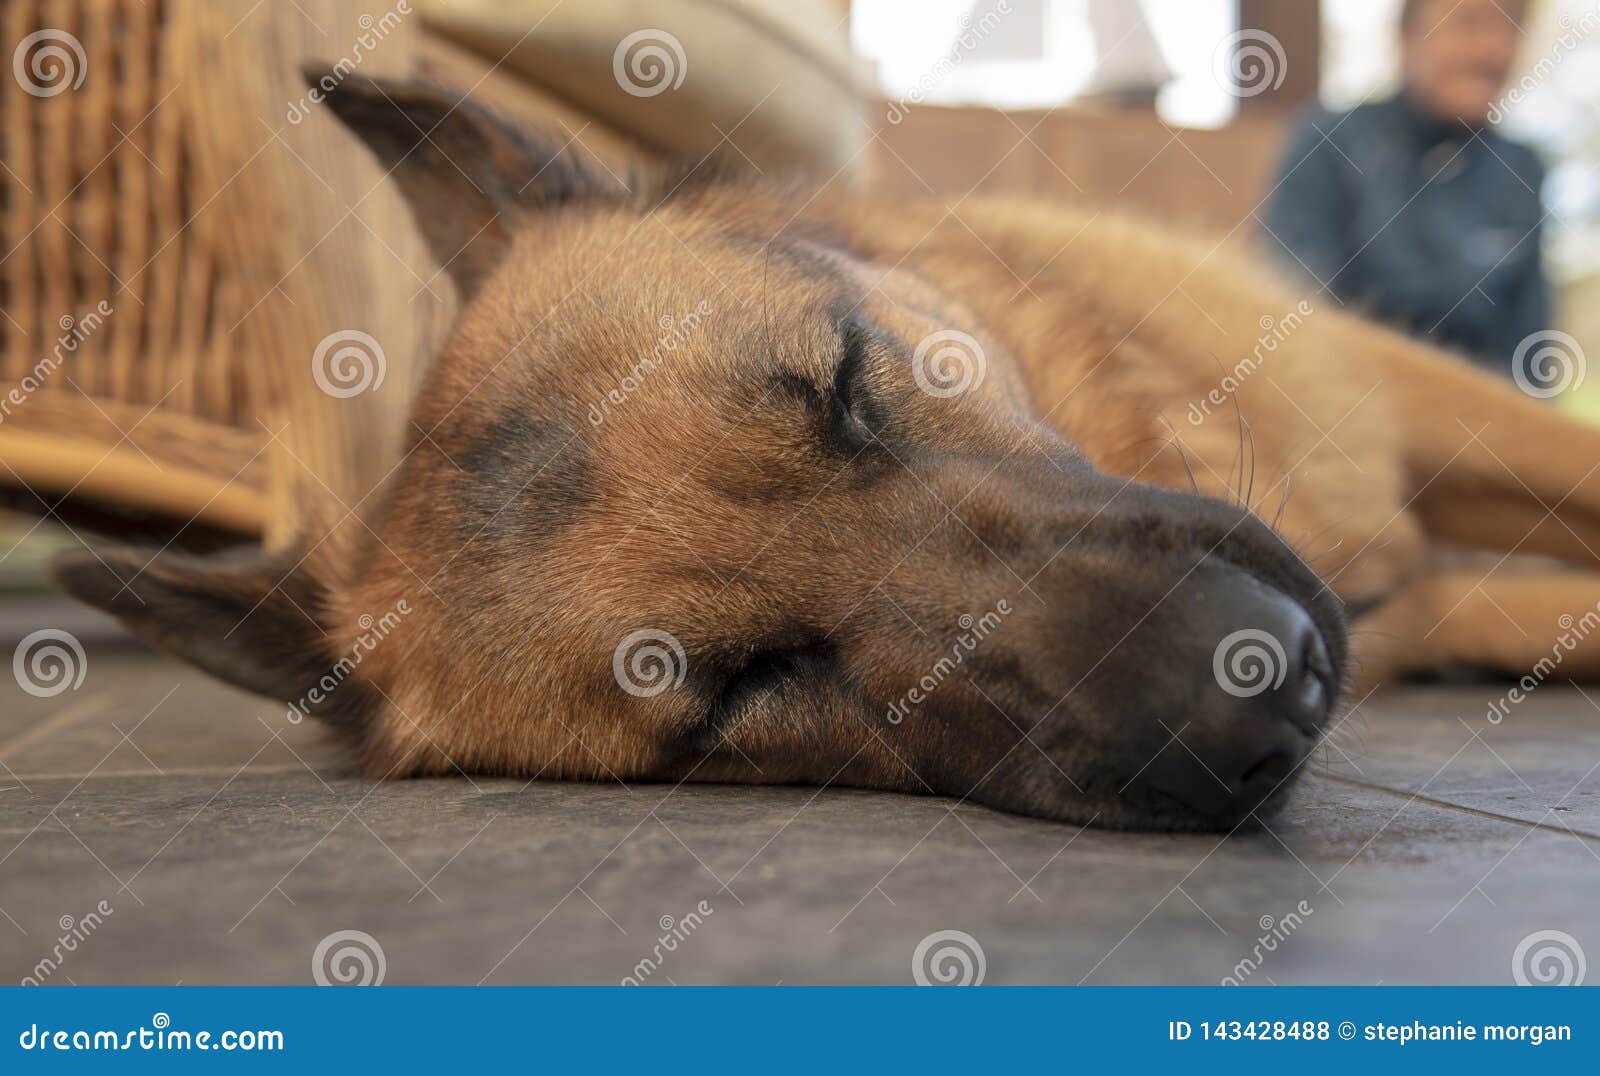 Sleeping German shepherd stock photo. Image of adorable - 143428488